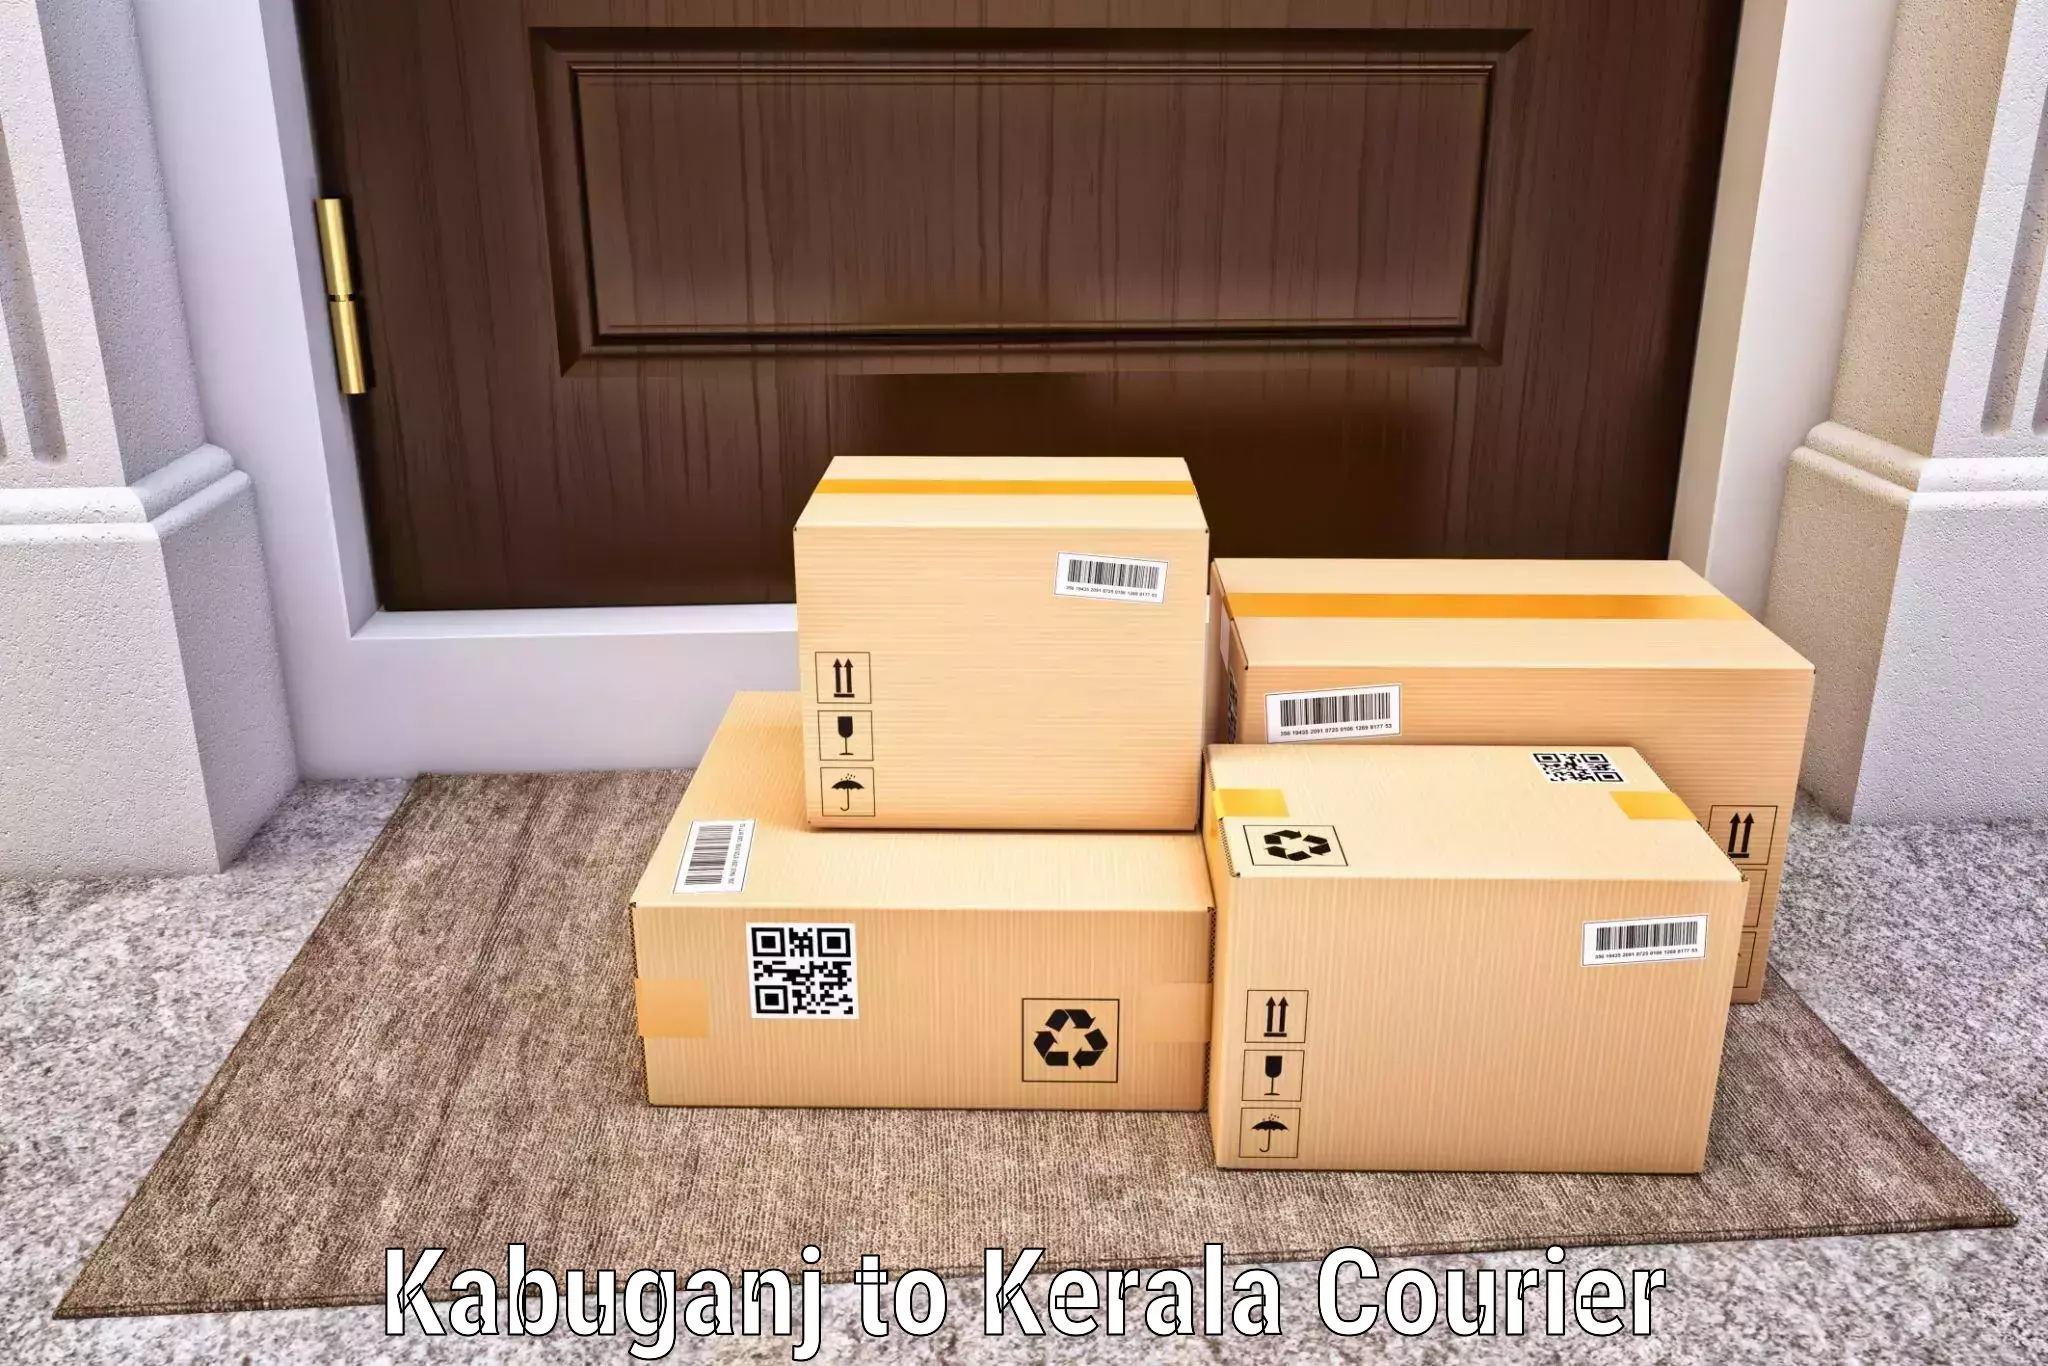 Smart shipping technology Kabuganj to Chungathara